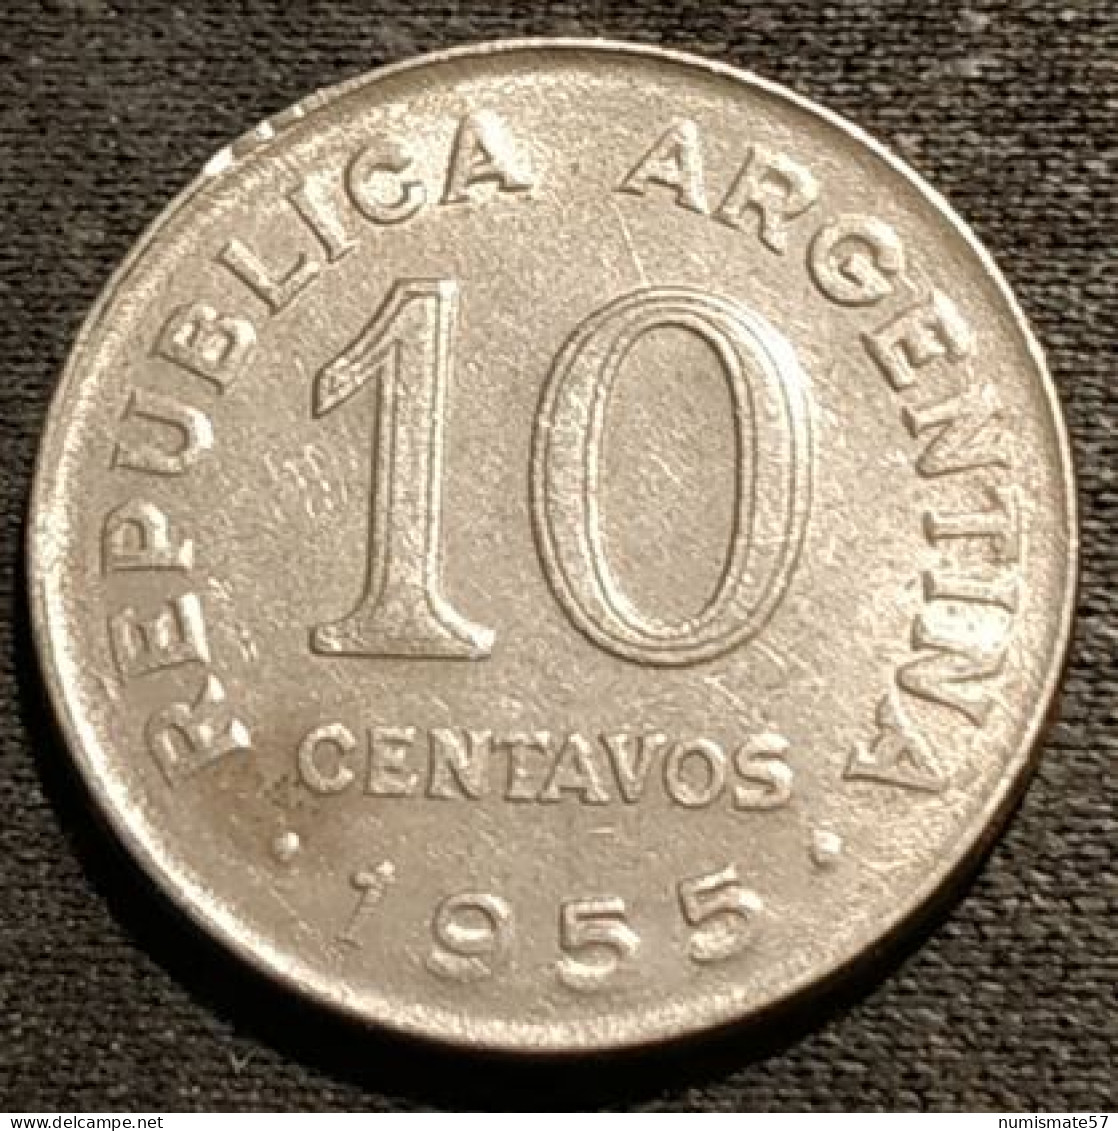 ARGENTINE - ARGENTINA - 10 CENTAVOS 1955 - San Martín - KM 51 - Argentina